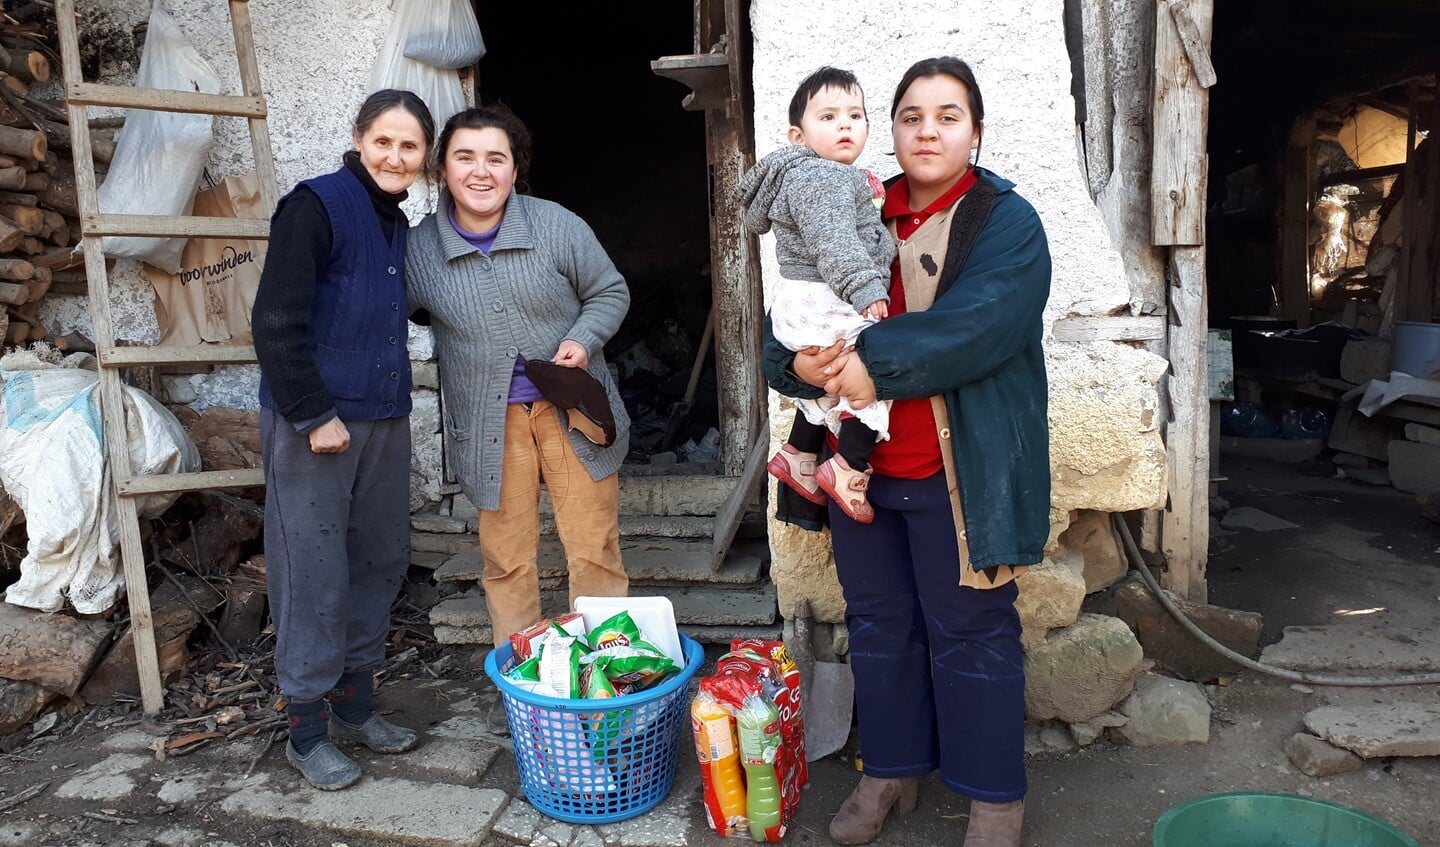 Het Albanië Comité helpt mensen met kleding, voedsel en andere goederen.